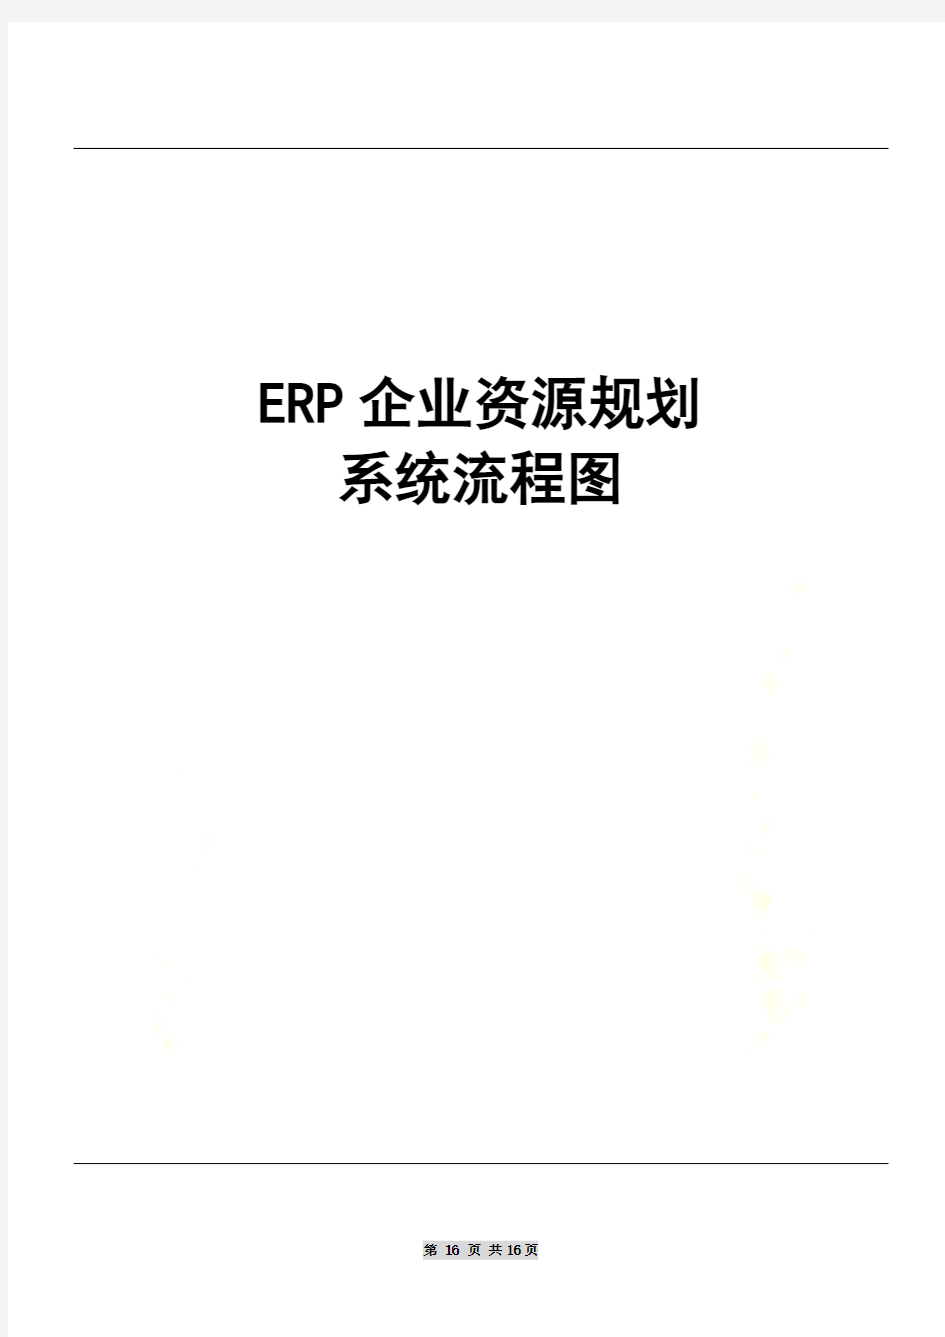 ERP企业资源规划流程图(ppt 15页)